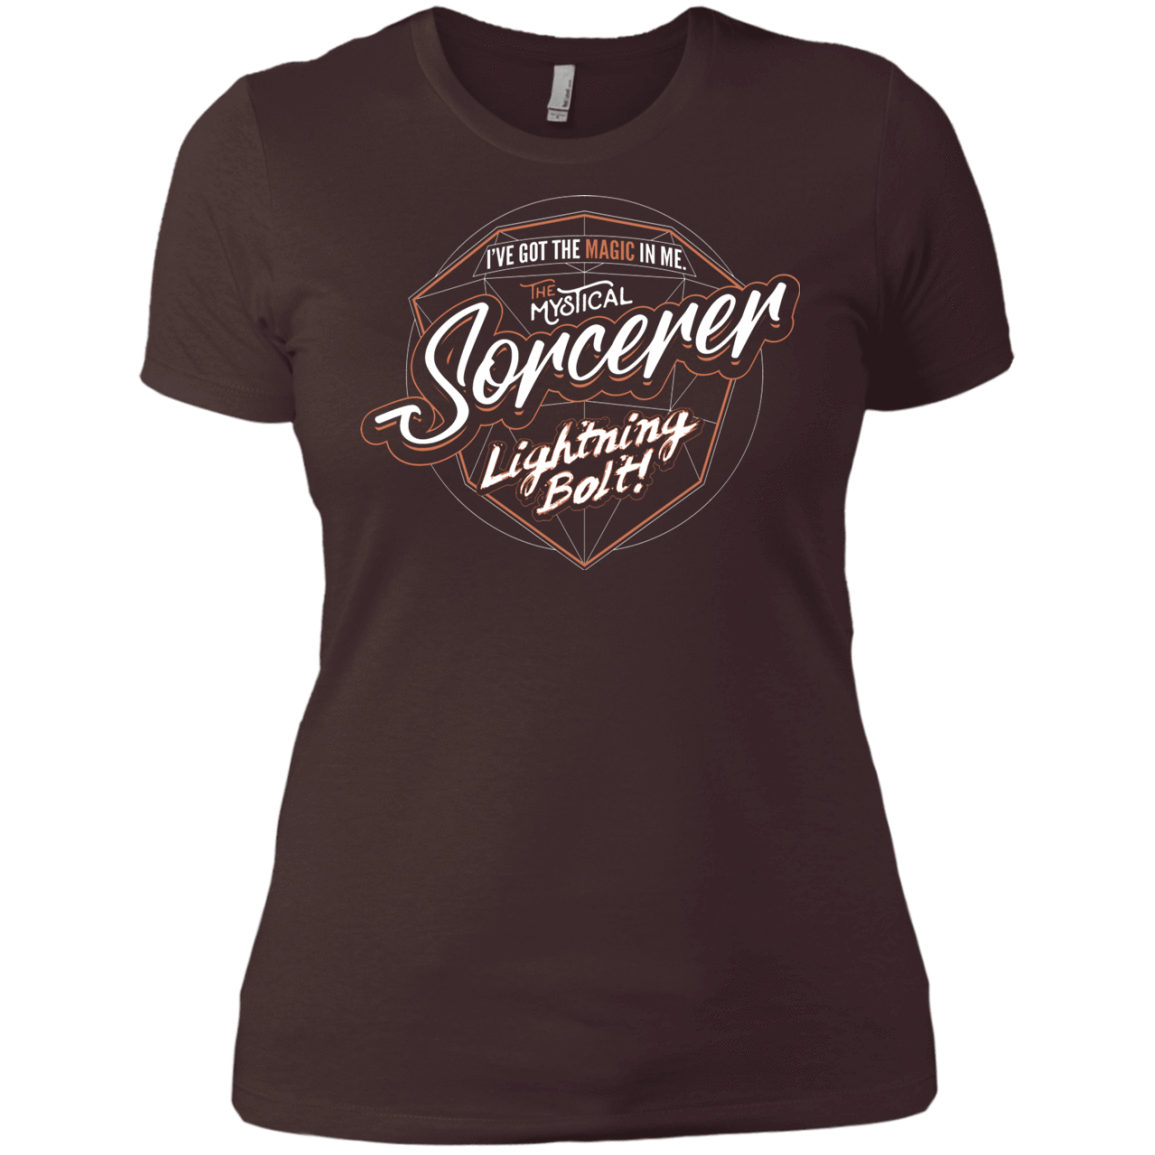 T-Shirts Dark Chocolate / X-Small Sorcerer Women's Premium T-Shirt